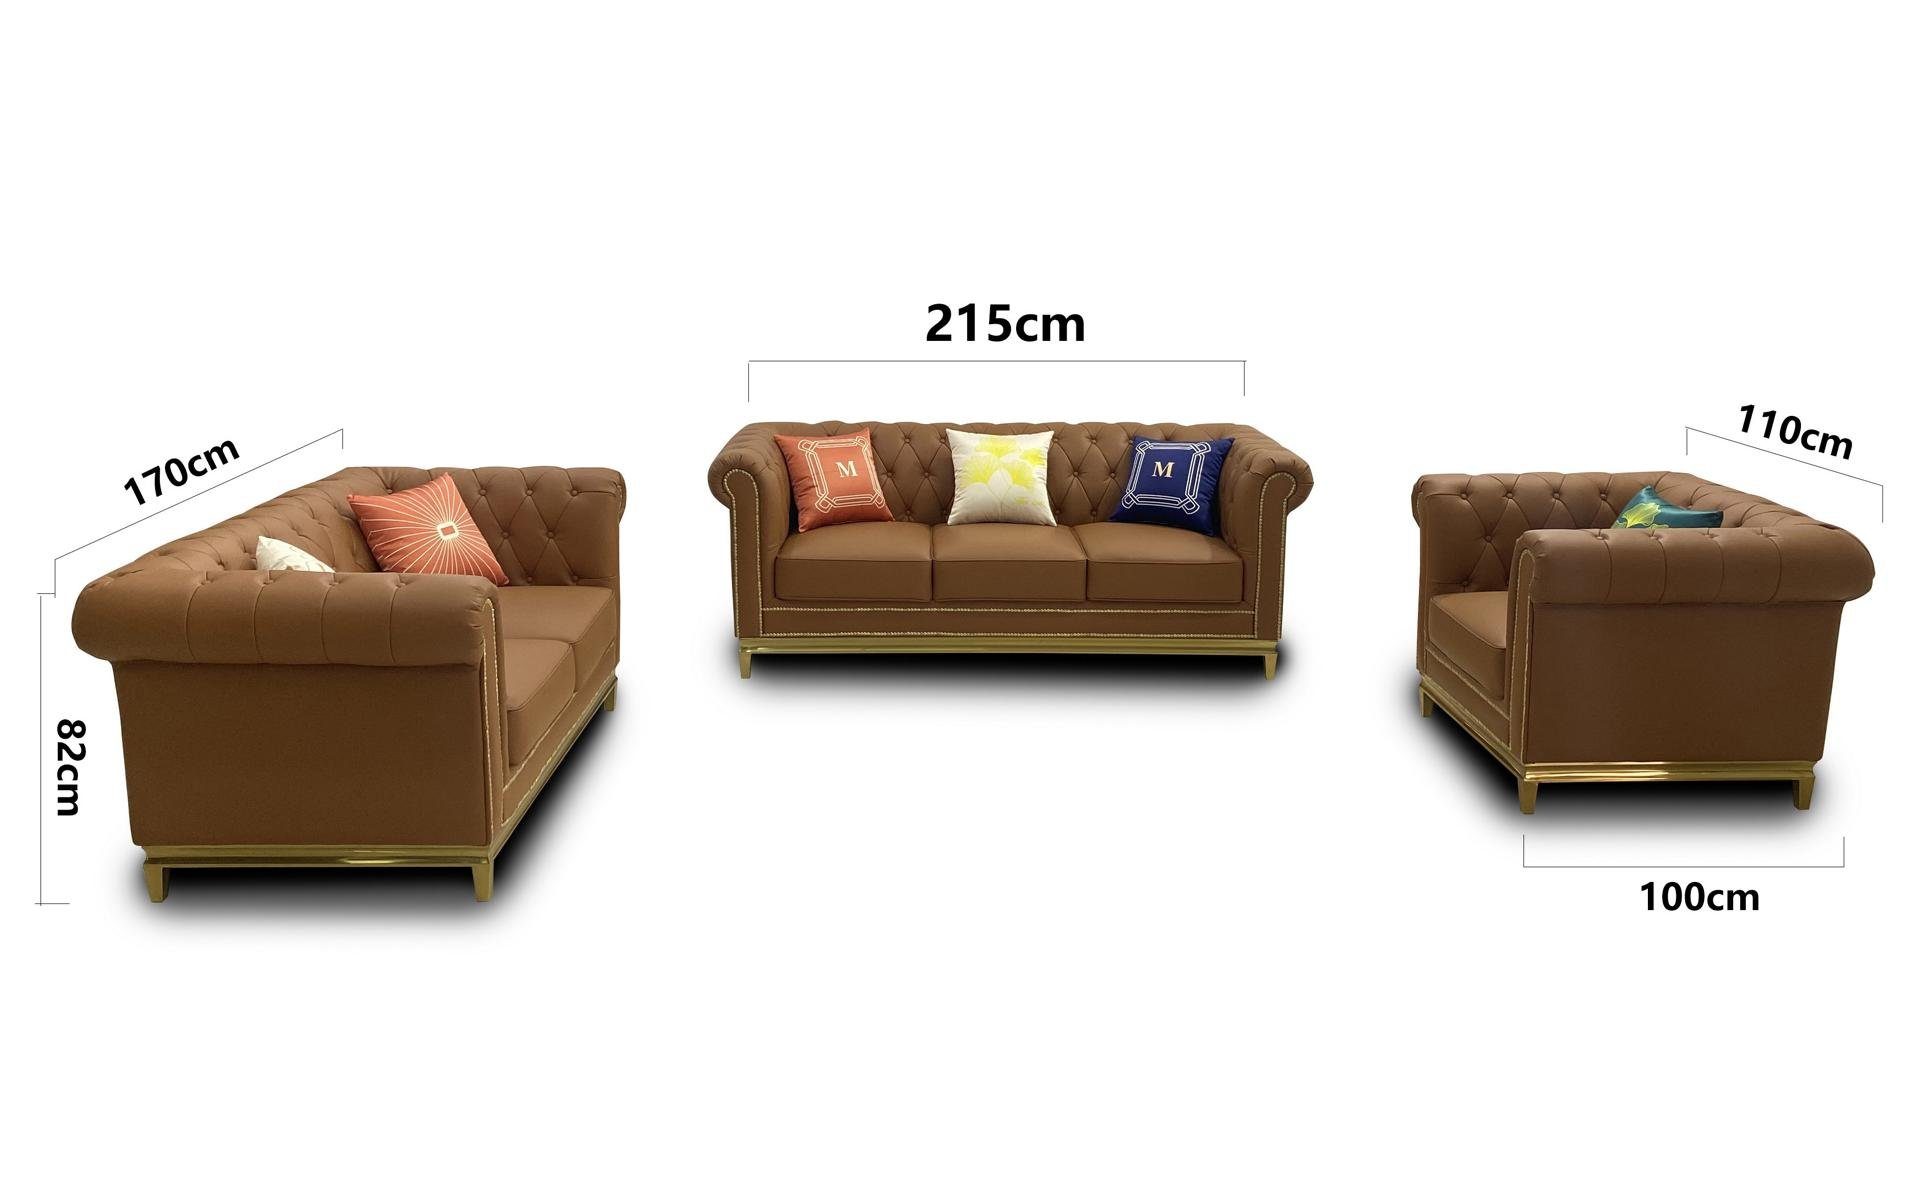 JVmoebel Sofa Luxuriöse Chesterfield Couchgarnitur 3+2+1 Sitzer Braun Neu, Made in Europe Beige